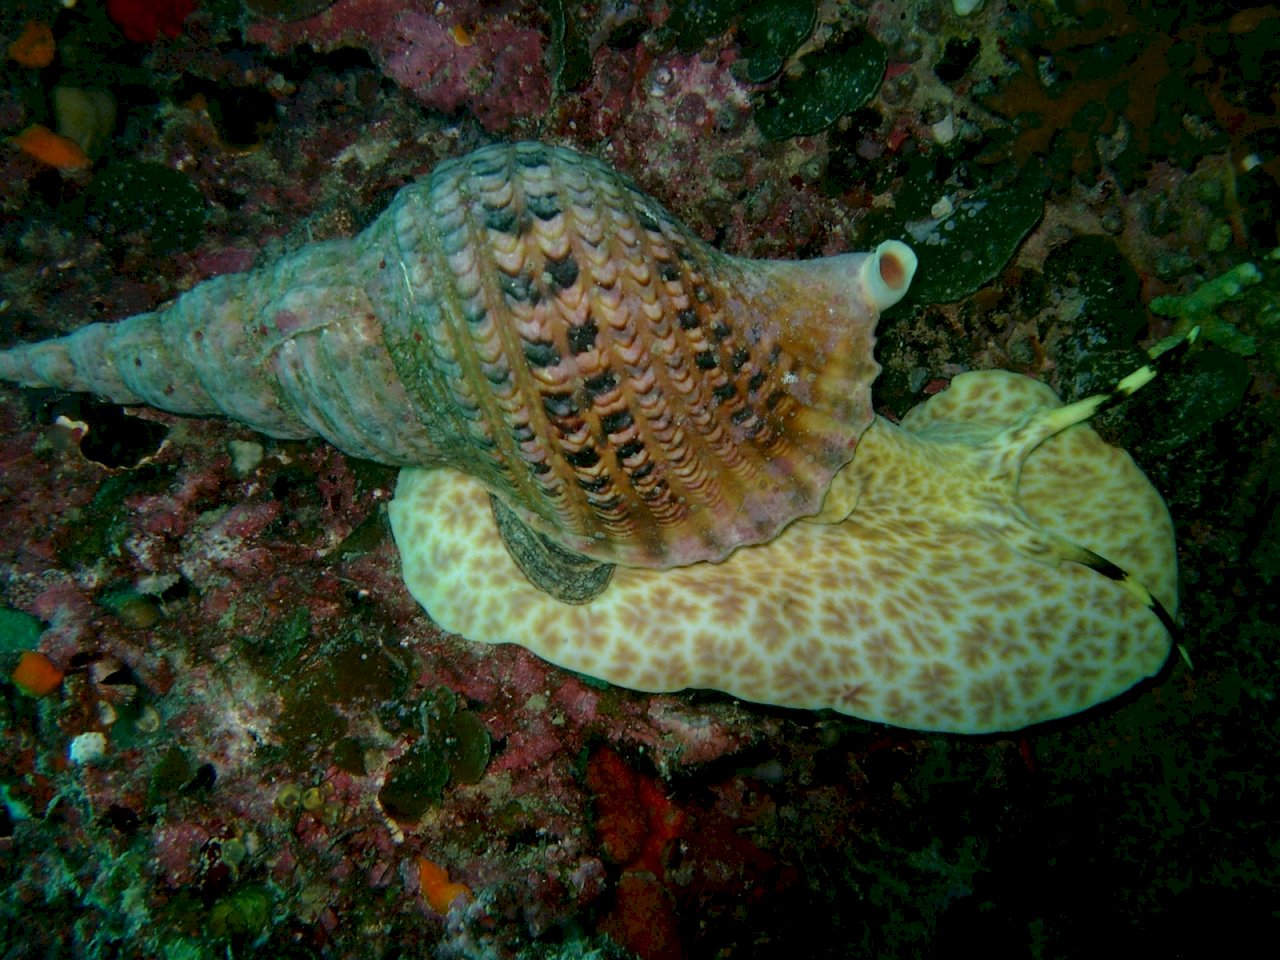 拯救大堡礁出奇招 澳擬釋放巨型海蝸牛